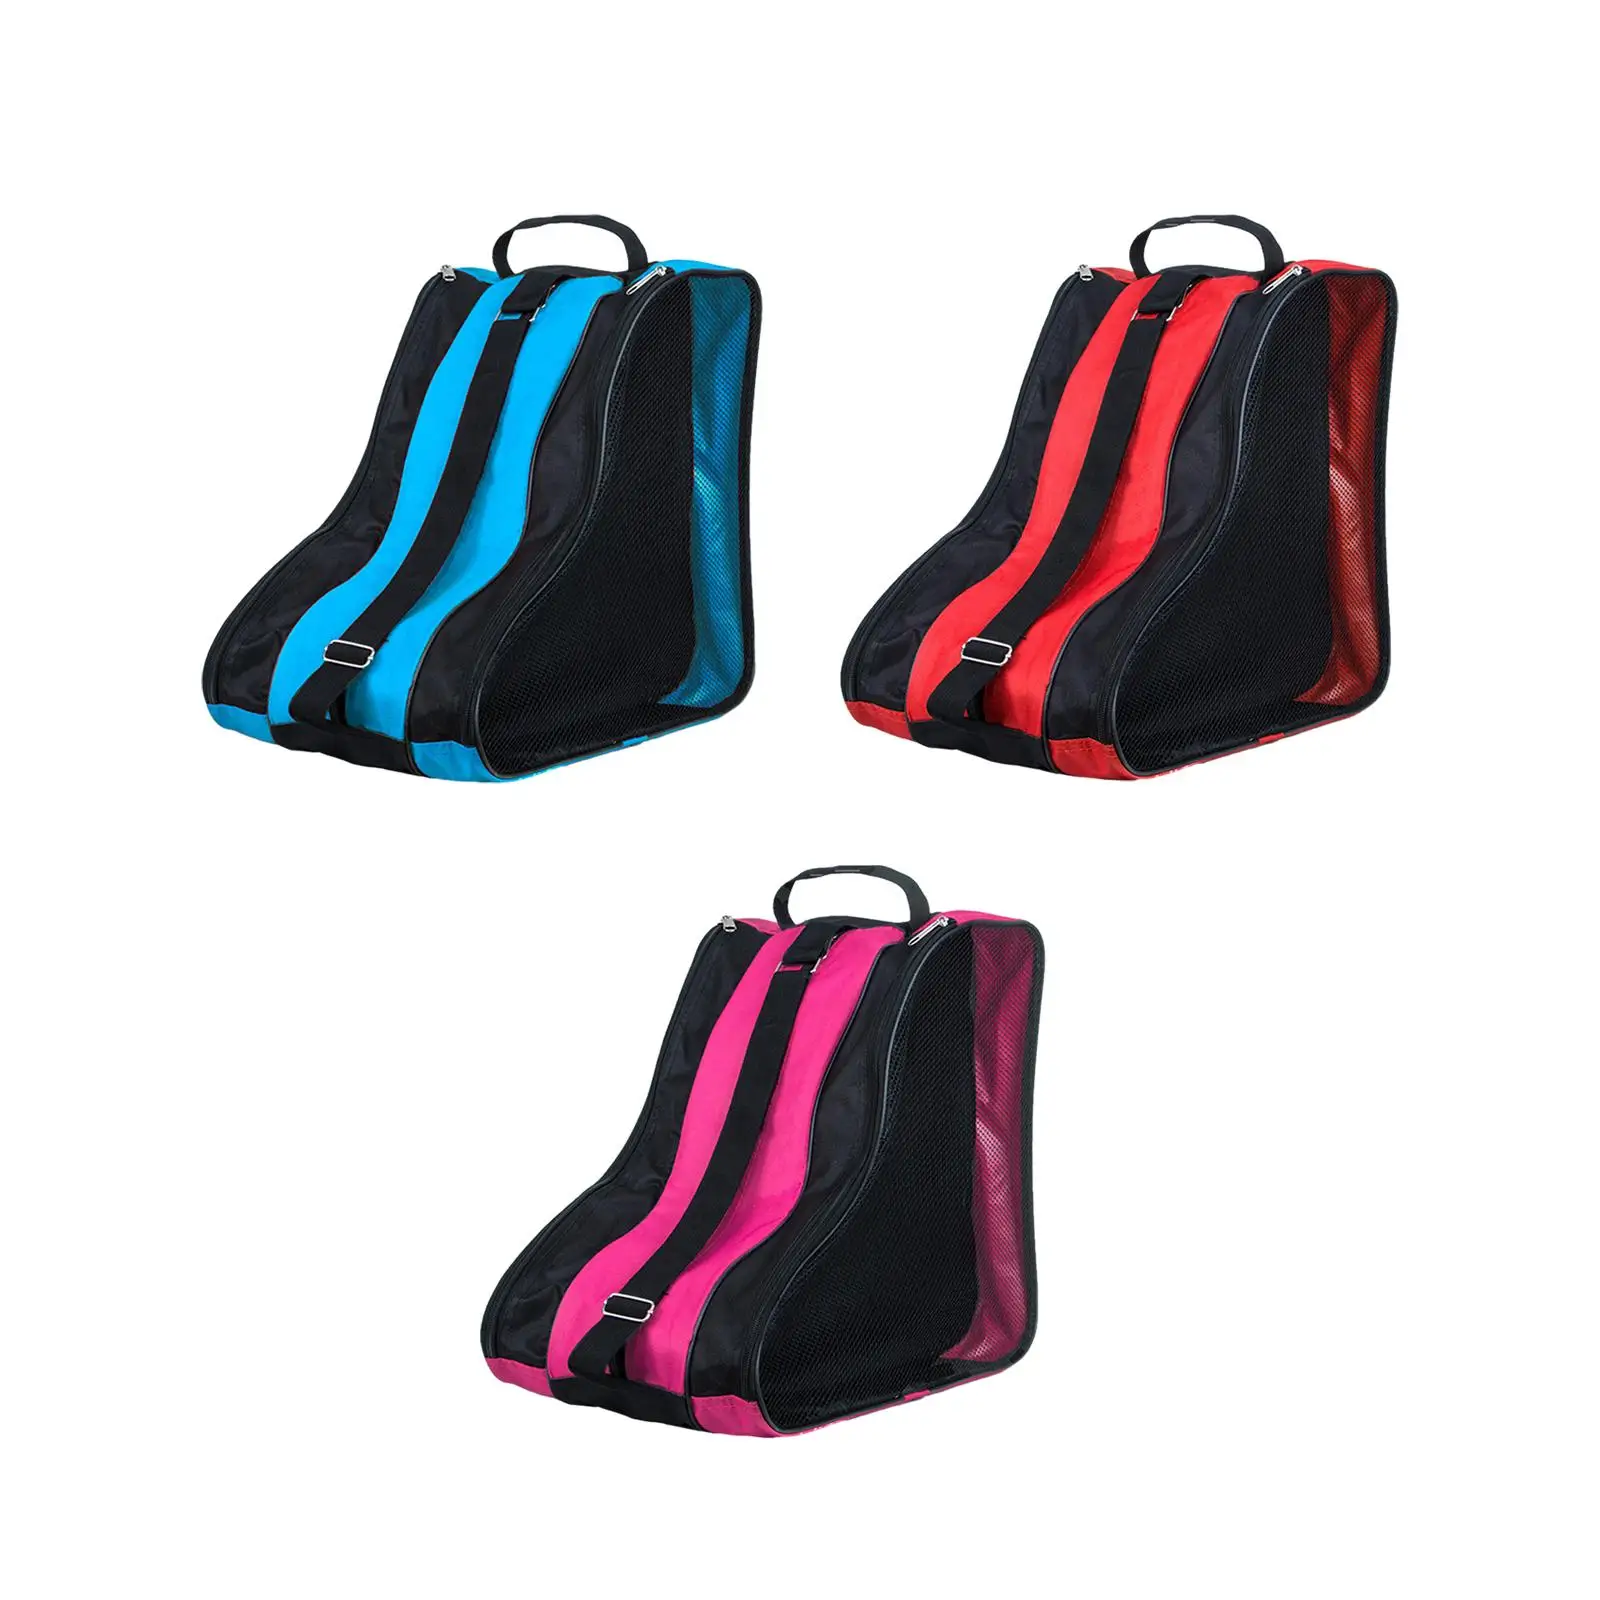 Roller Skate Bag Accessories Ice Skate Bag for Quad Skates Ice Hockey Skate